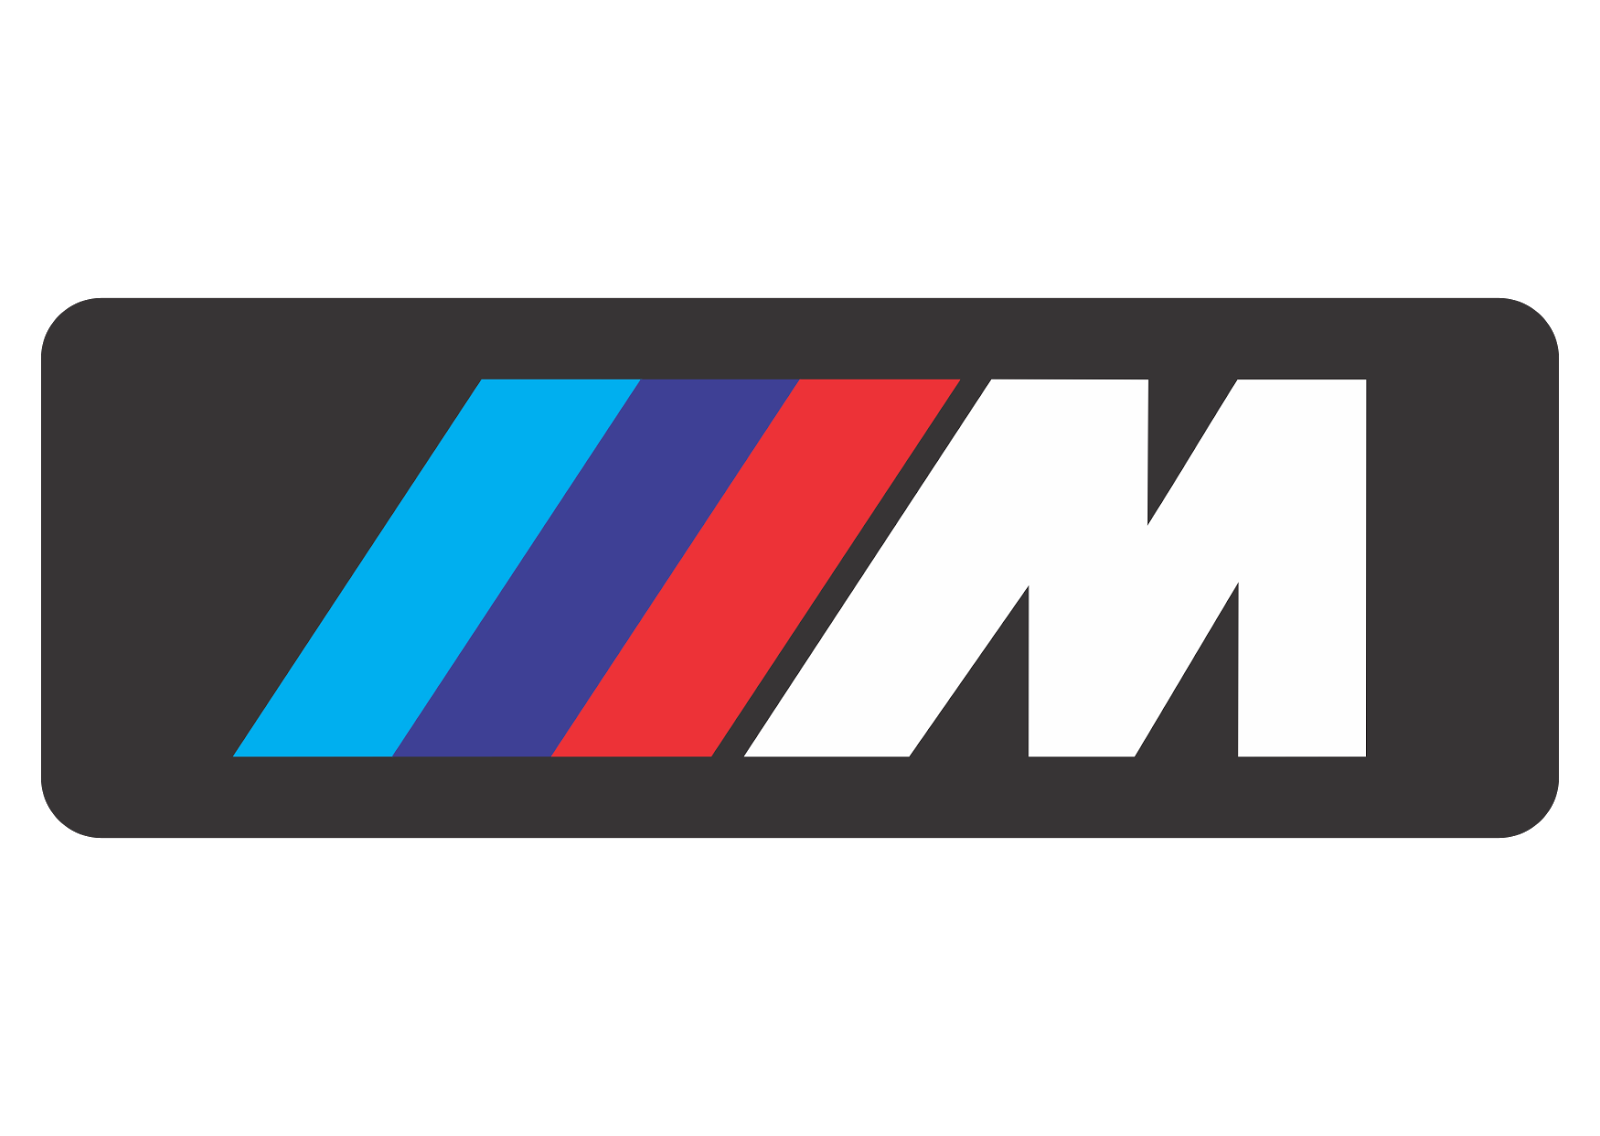 Motorsport BMW Logo, image, download logo | LogoWiki.net